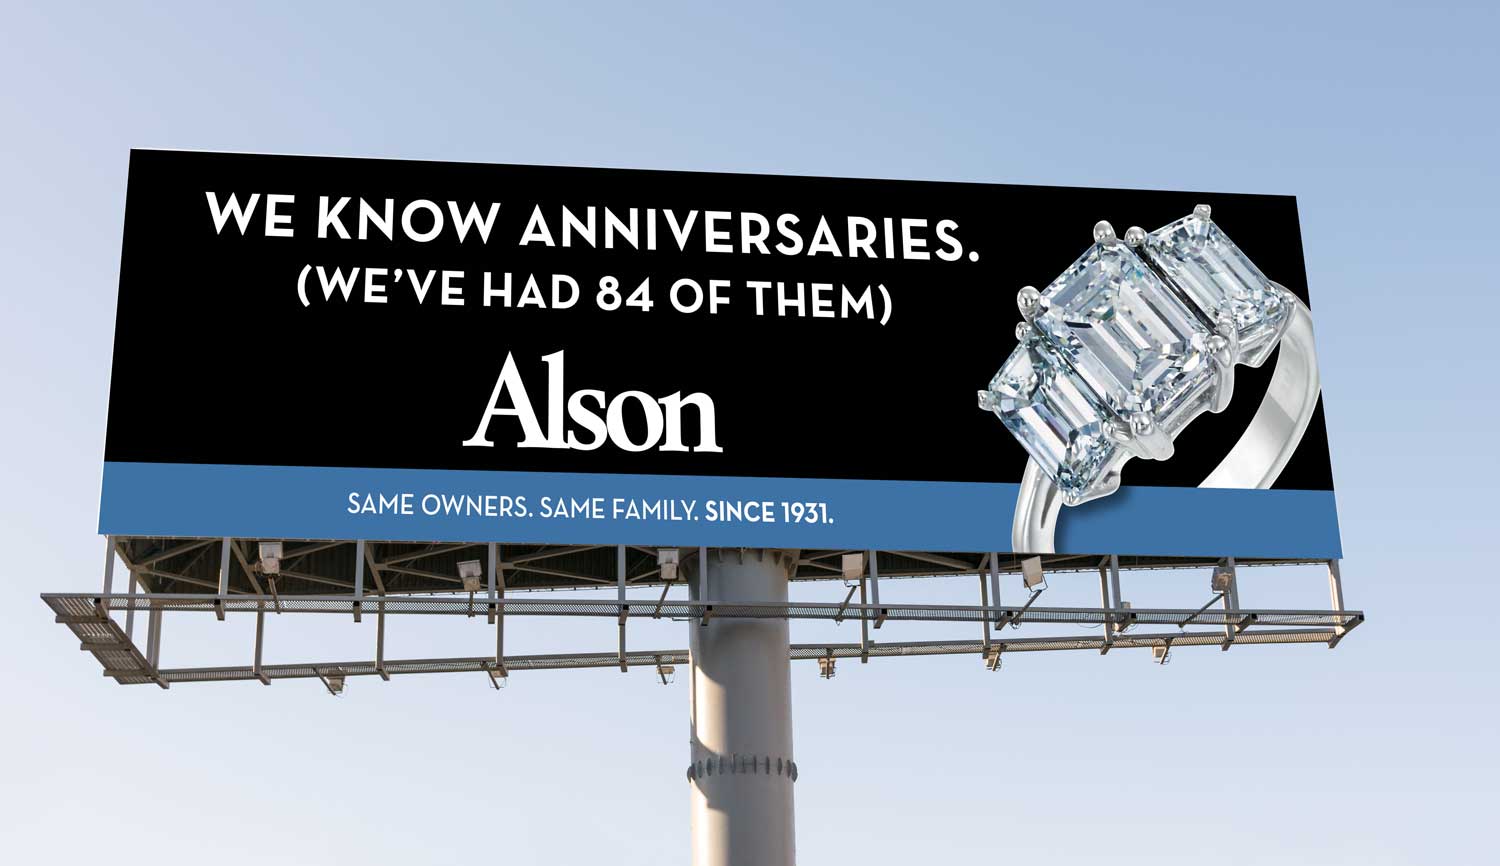 alson anniversary billboard